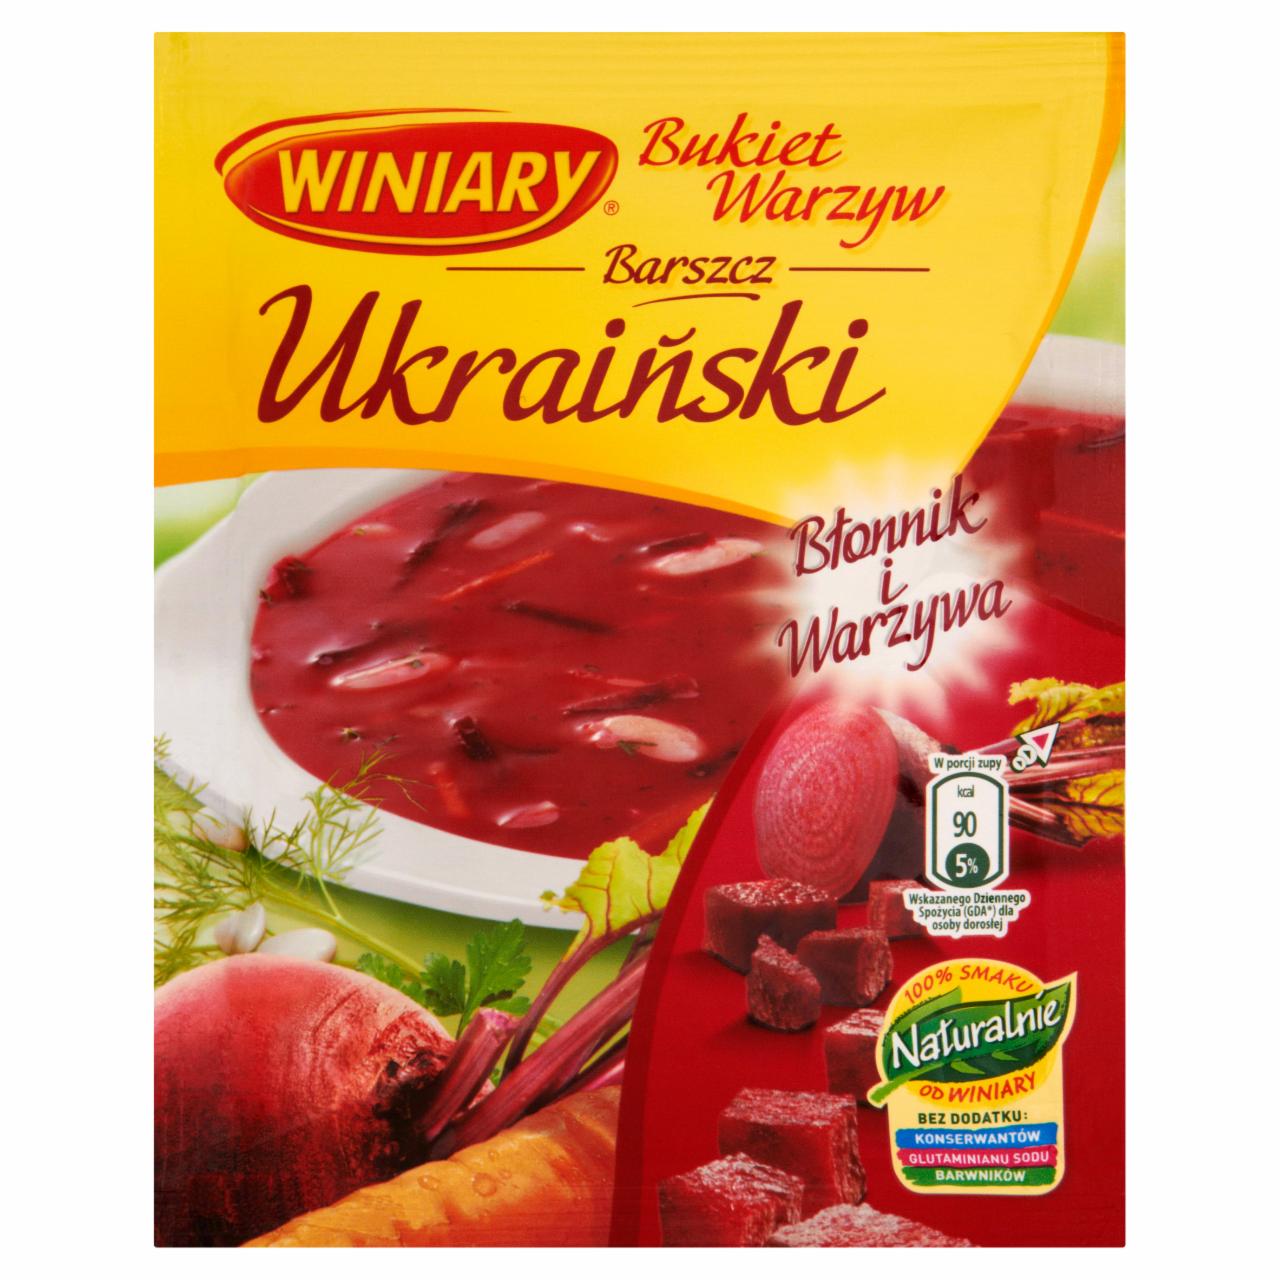 Zdjęcia - Winiary Bukiet Warzyw Barszcz ukraiński 54 g